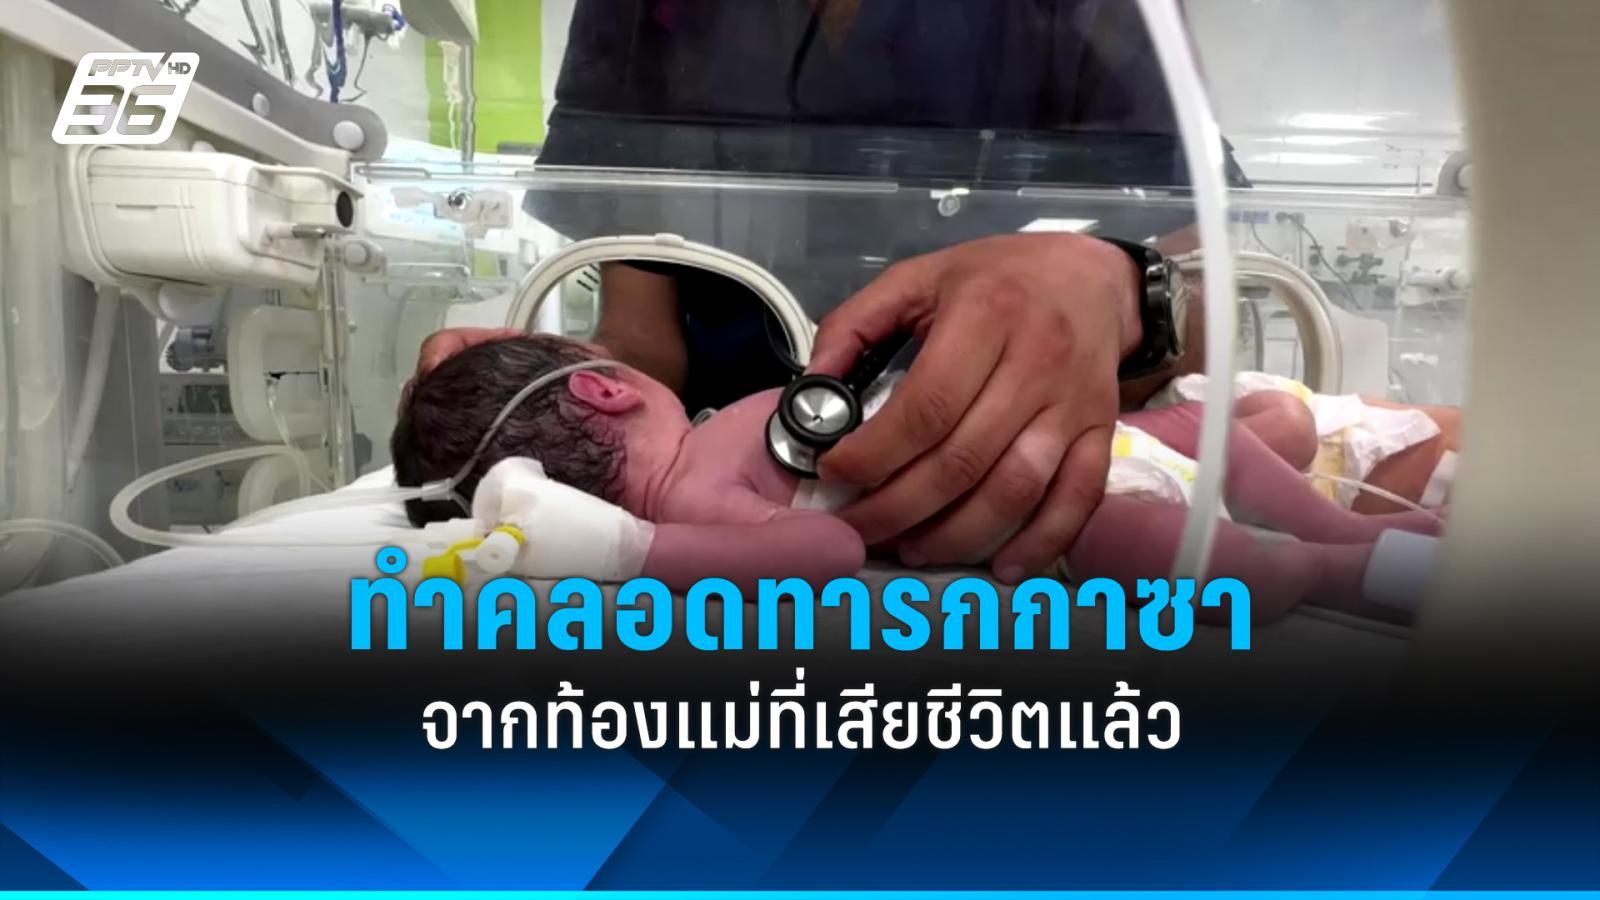 ทีมแพทย์ในฉนวนกาซาทำคลอดทารกจากร่างแม่ที่เสียชีวิตแล้ว